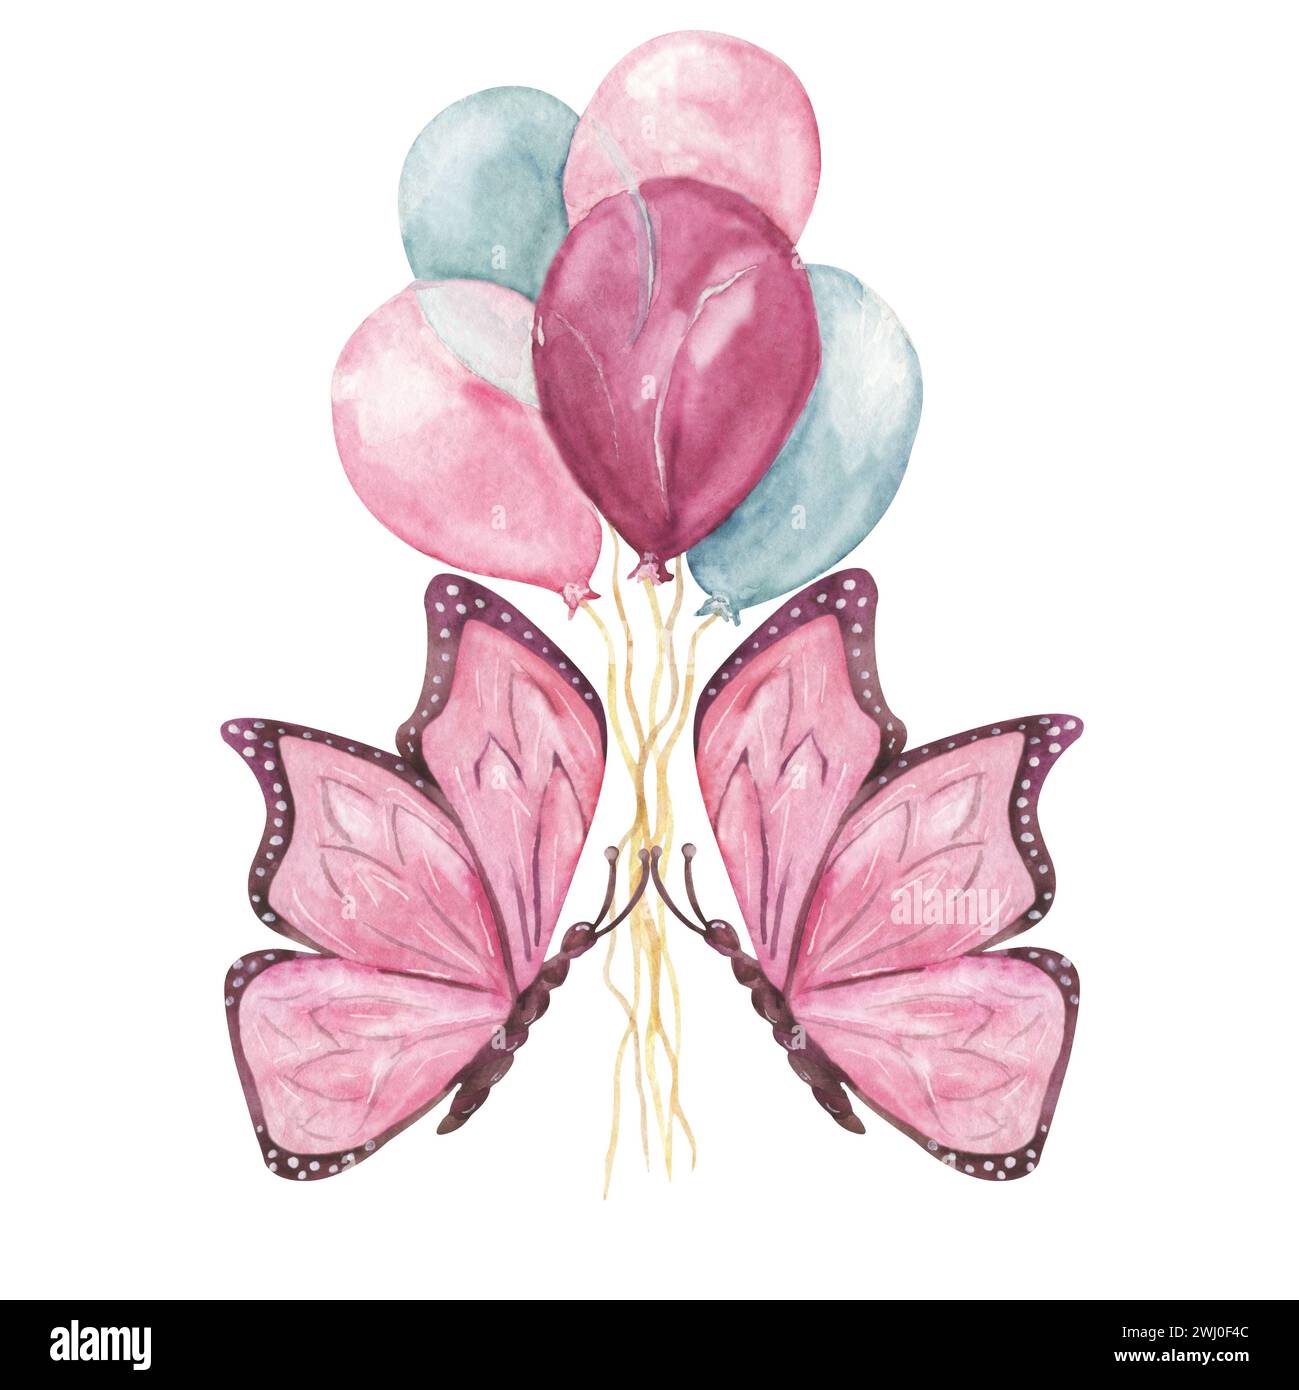 butterflies kiss balloons Stock Photo